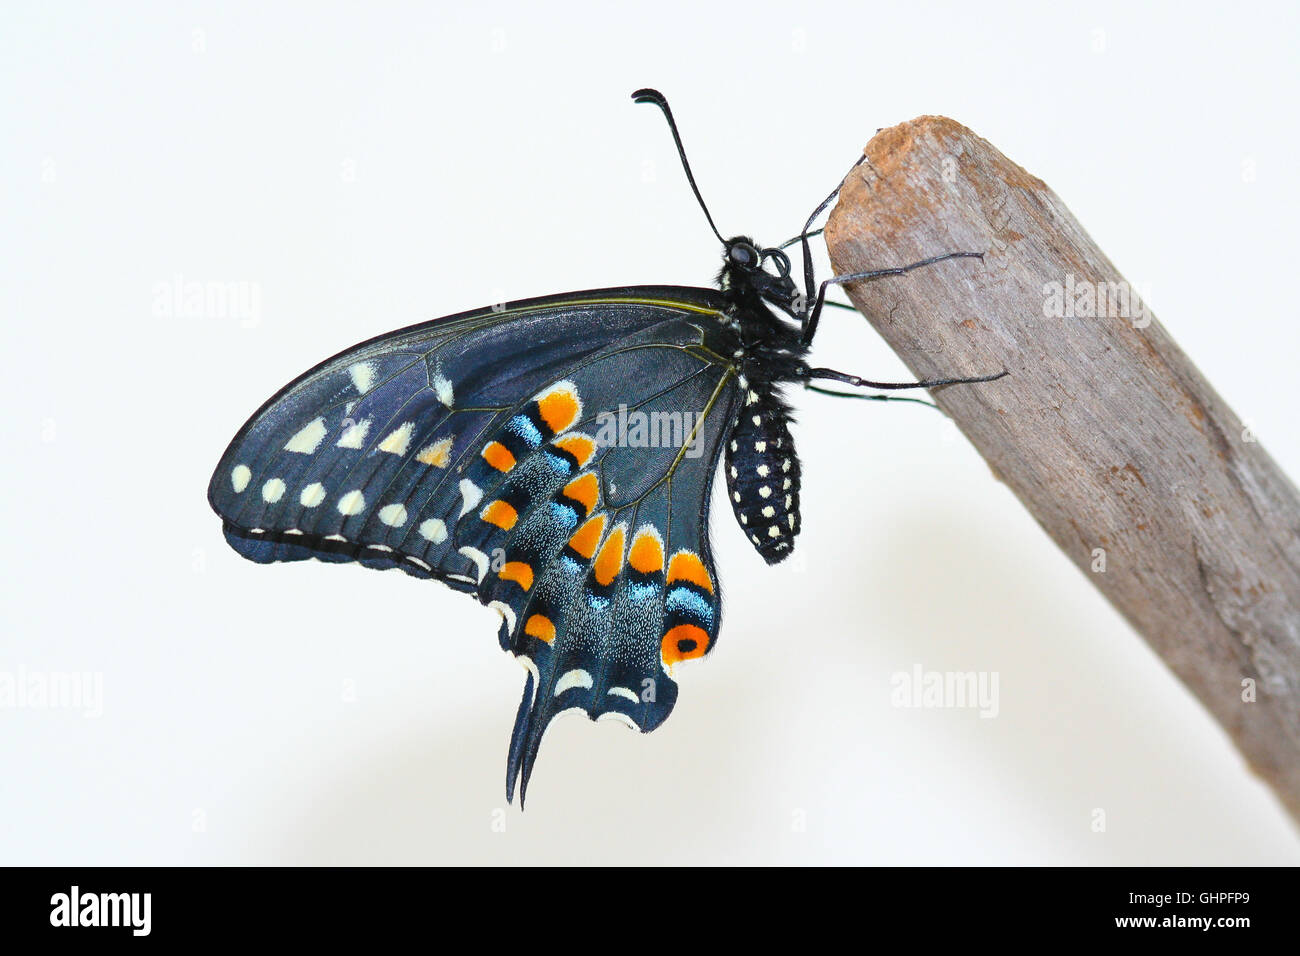 Une femme fraîchement émergées black swallowtail Butterfly (Papilio polyxenes) reposant sur un morceau de bois flotté, Indiana, United States Banque D'Images